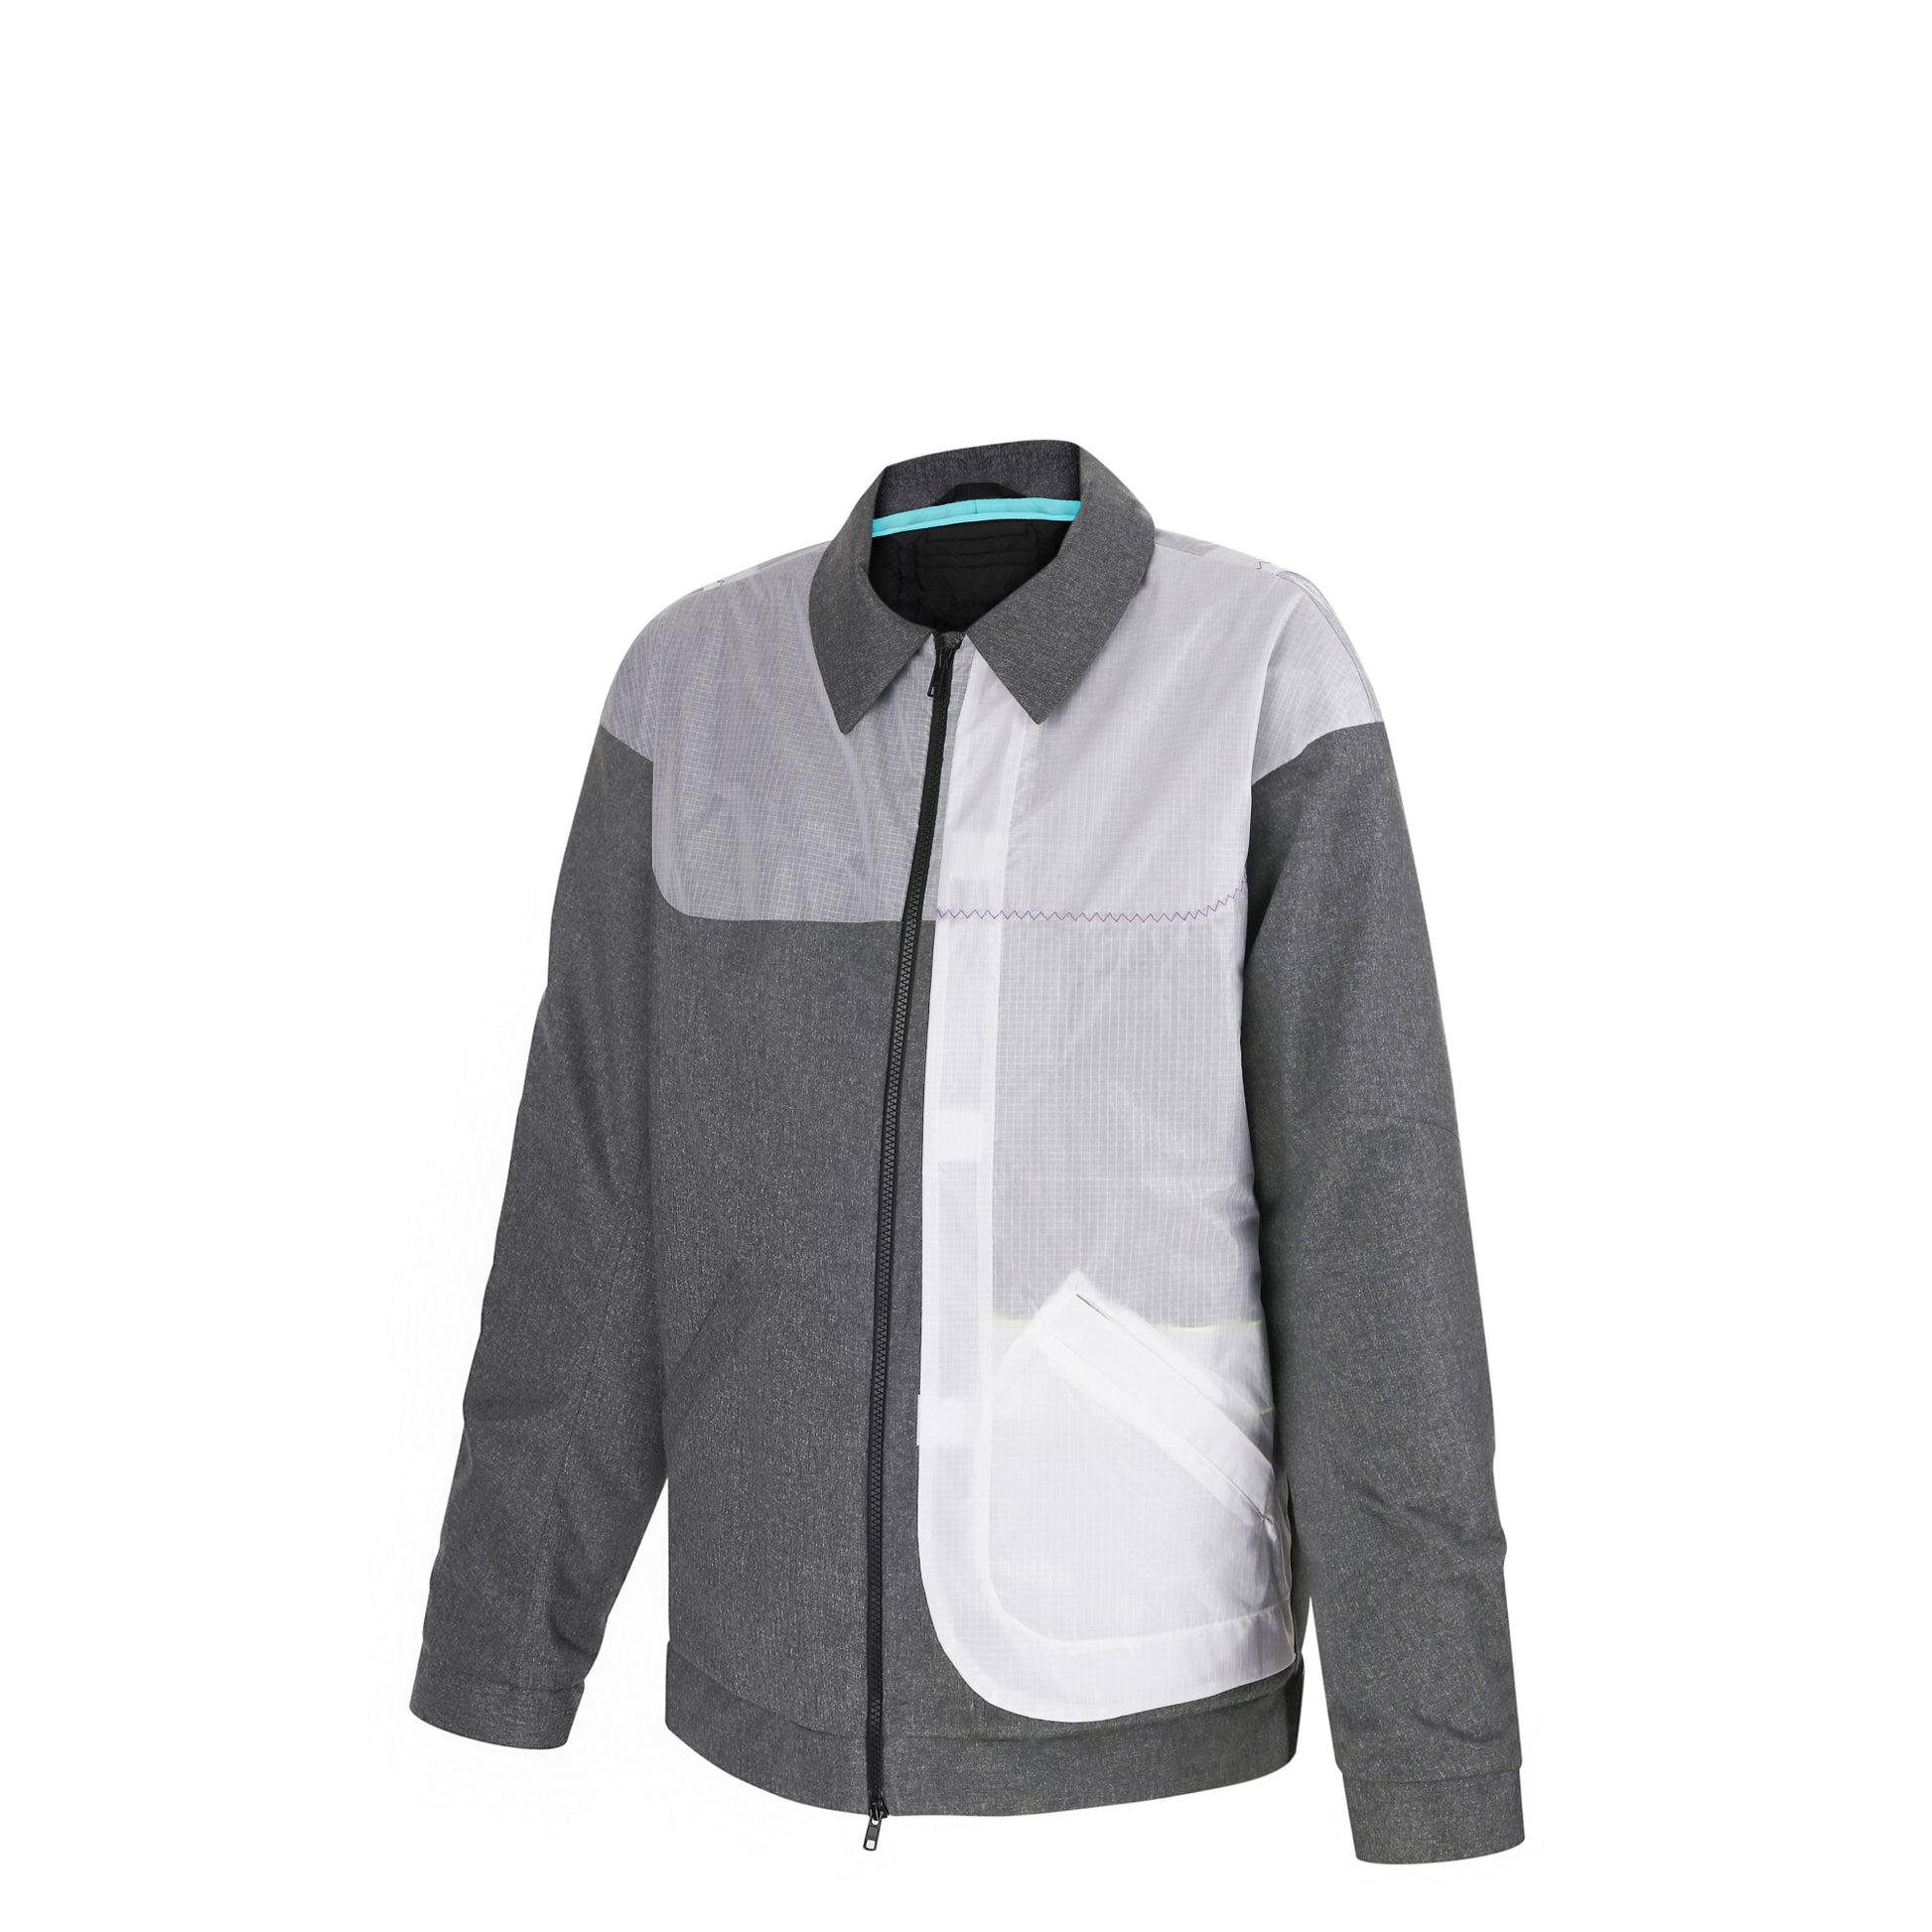 Casual warm jacket: waterproof windbreaker/windcheater